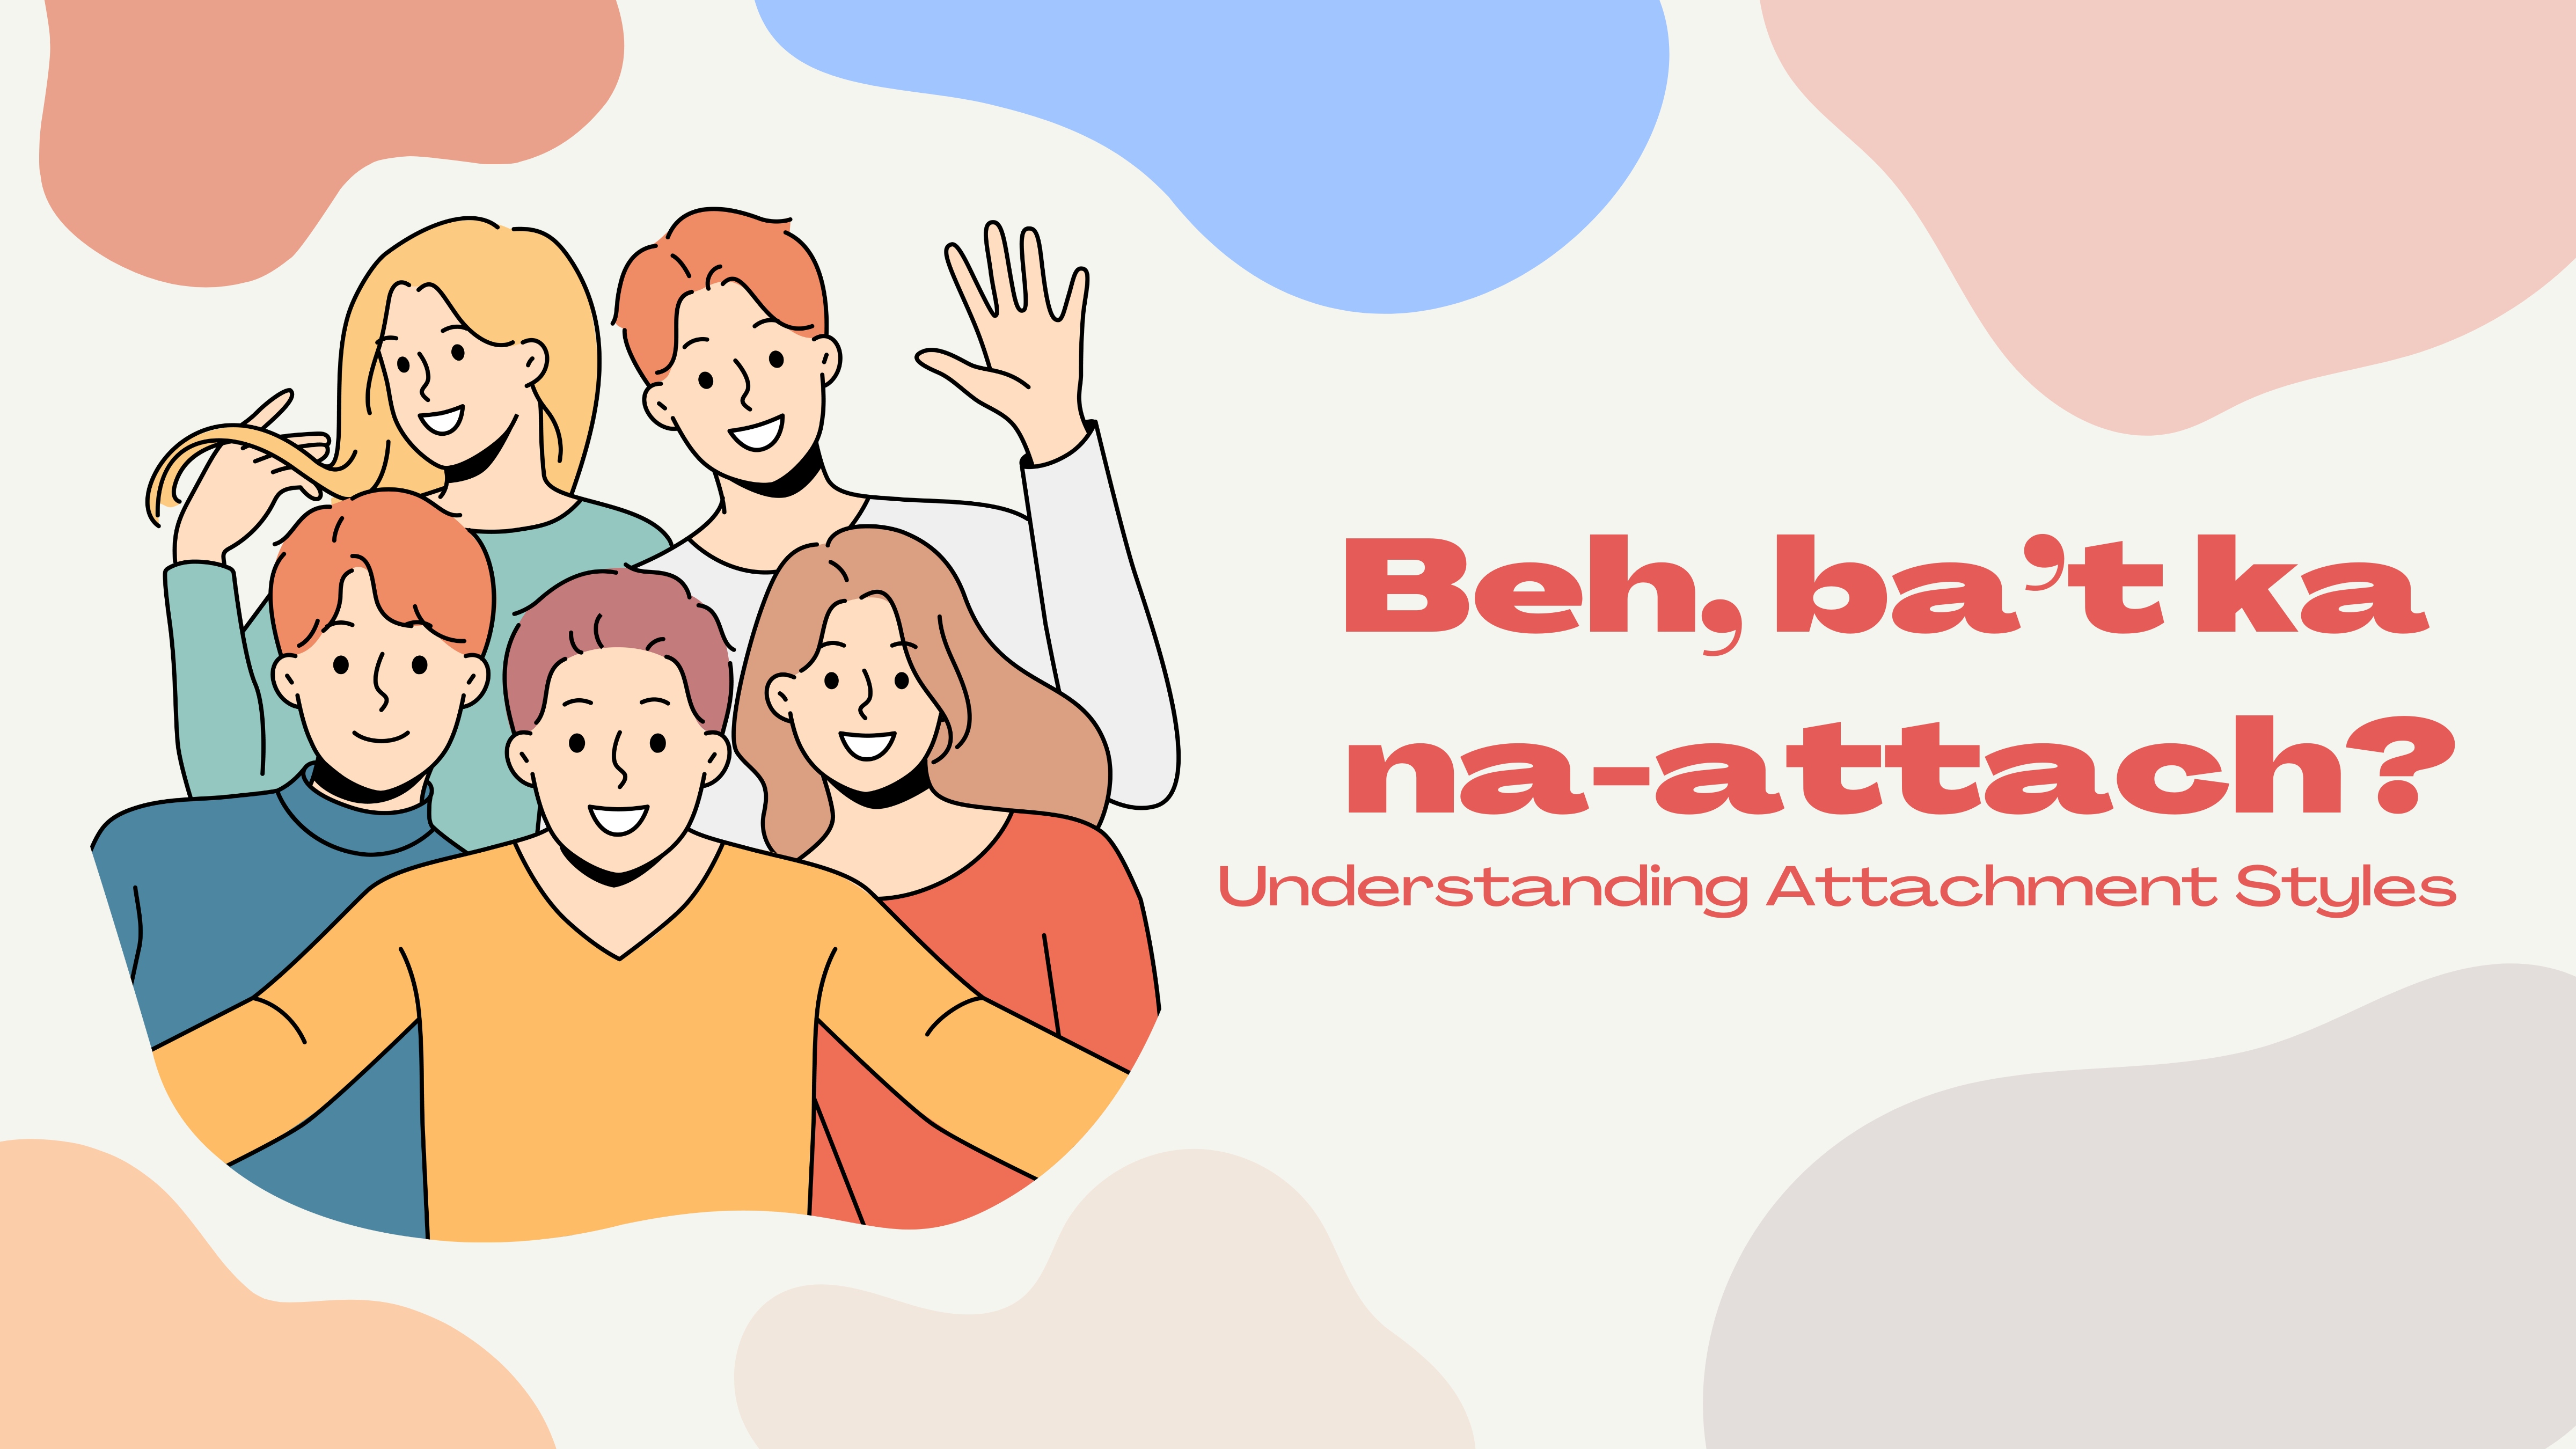 Beh, ba't ka na-attach? : Understanding Attachment Styles